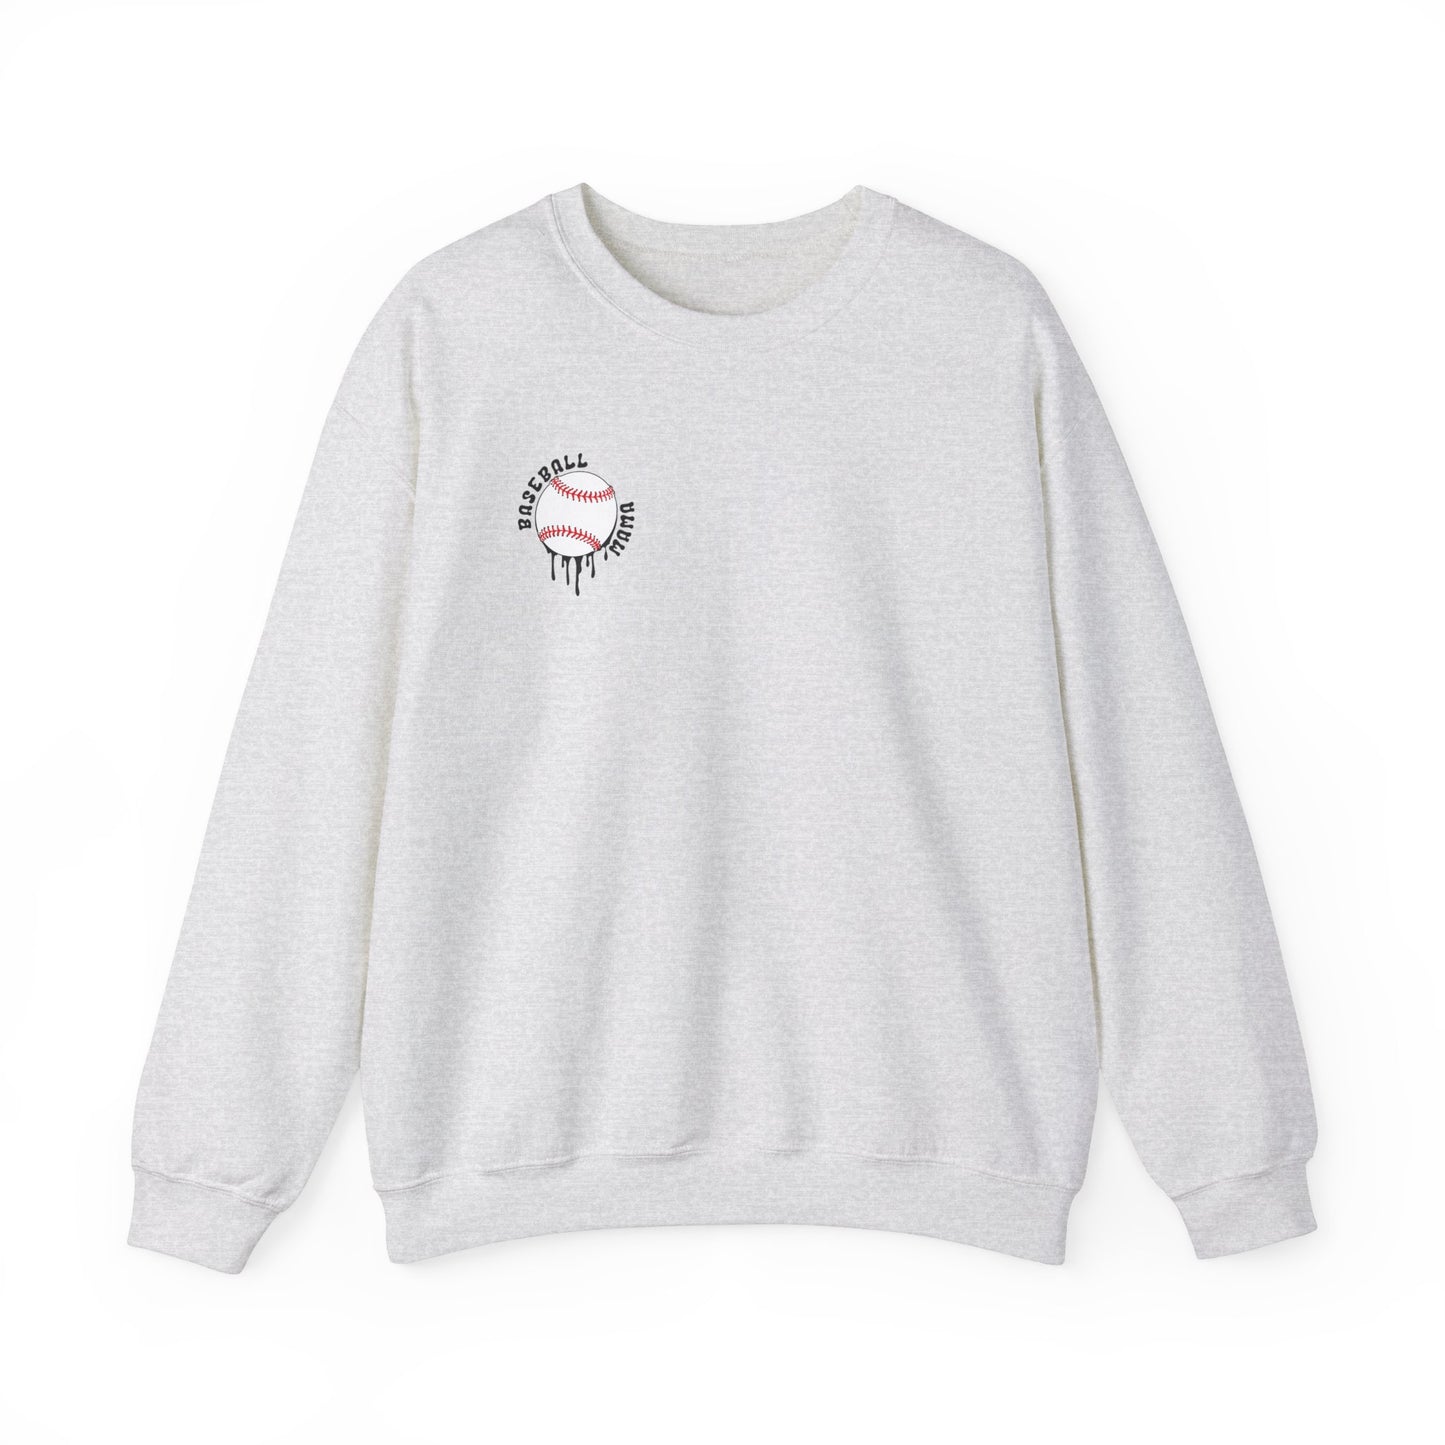 Loud Mouth Baseball Mama Sweatshirt (black letters)